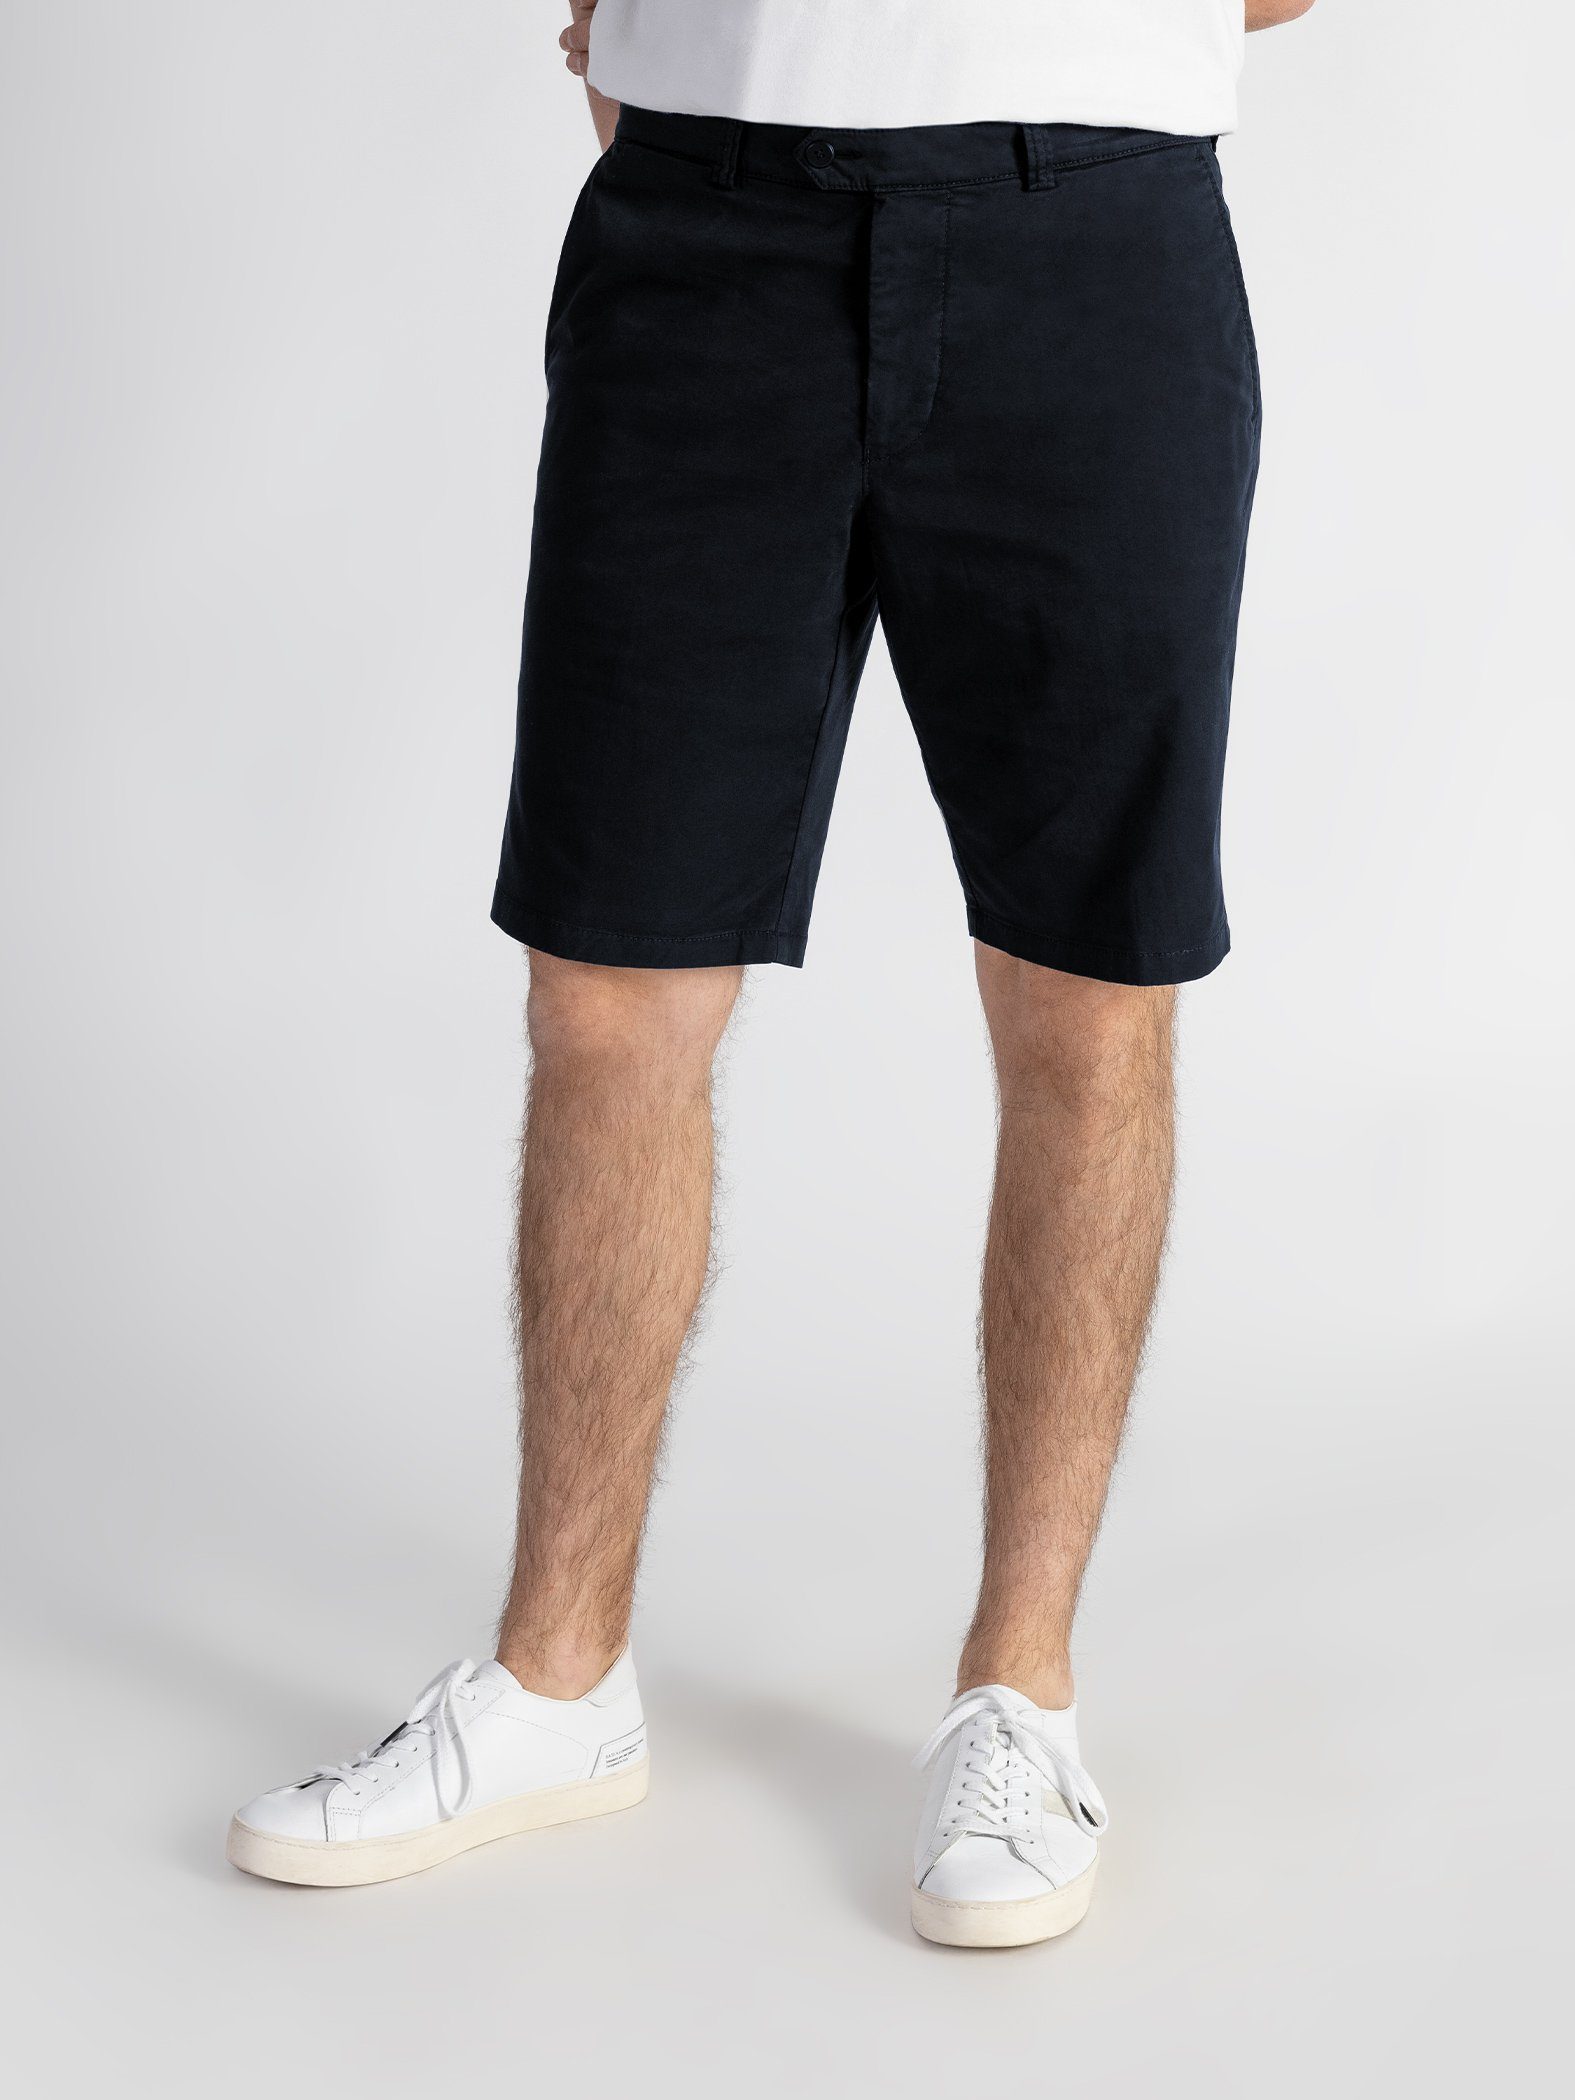 Dunkelblau TwoMates Shorts GOTS-zertifiziert Bund, elastischem Shorts mit Farbauswahl,